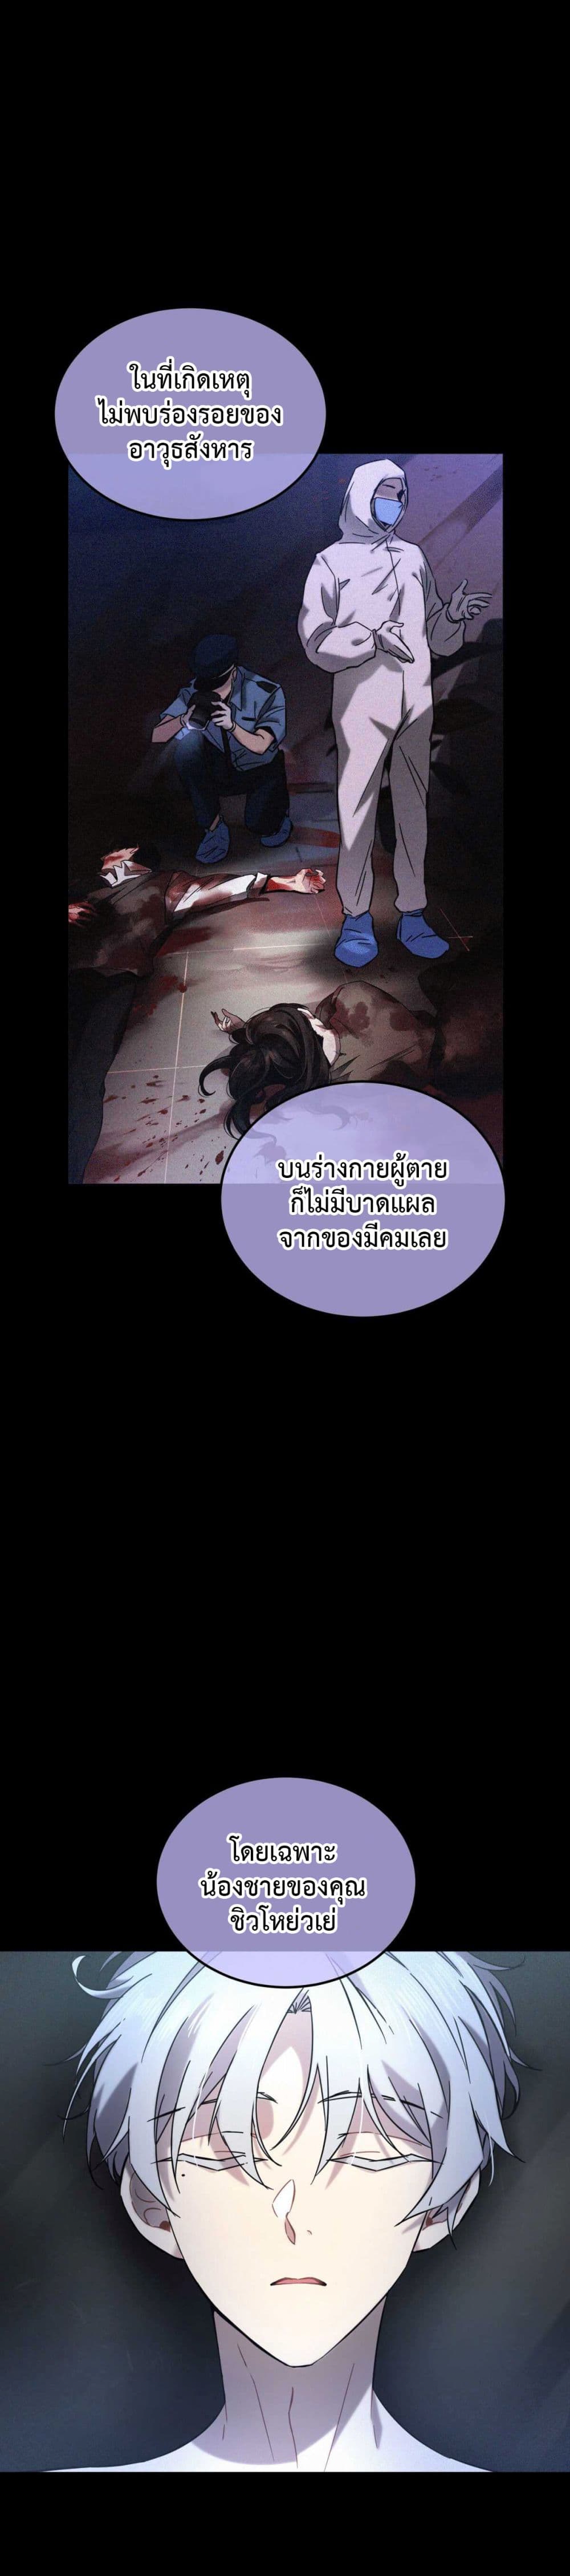 Anemone : Dead or Alive 3-ชายกินคนในอพาร์ทเม้นท์